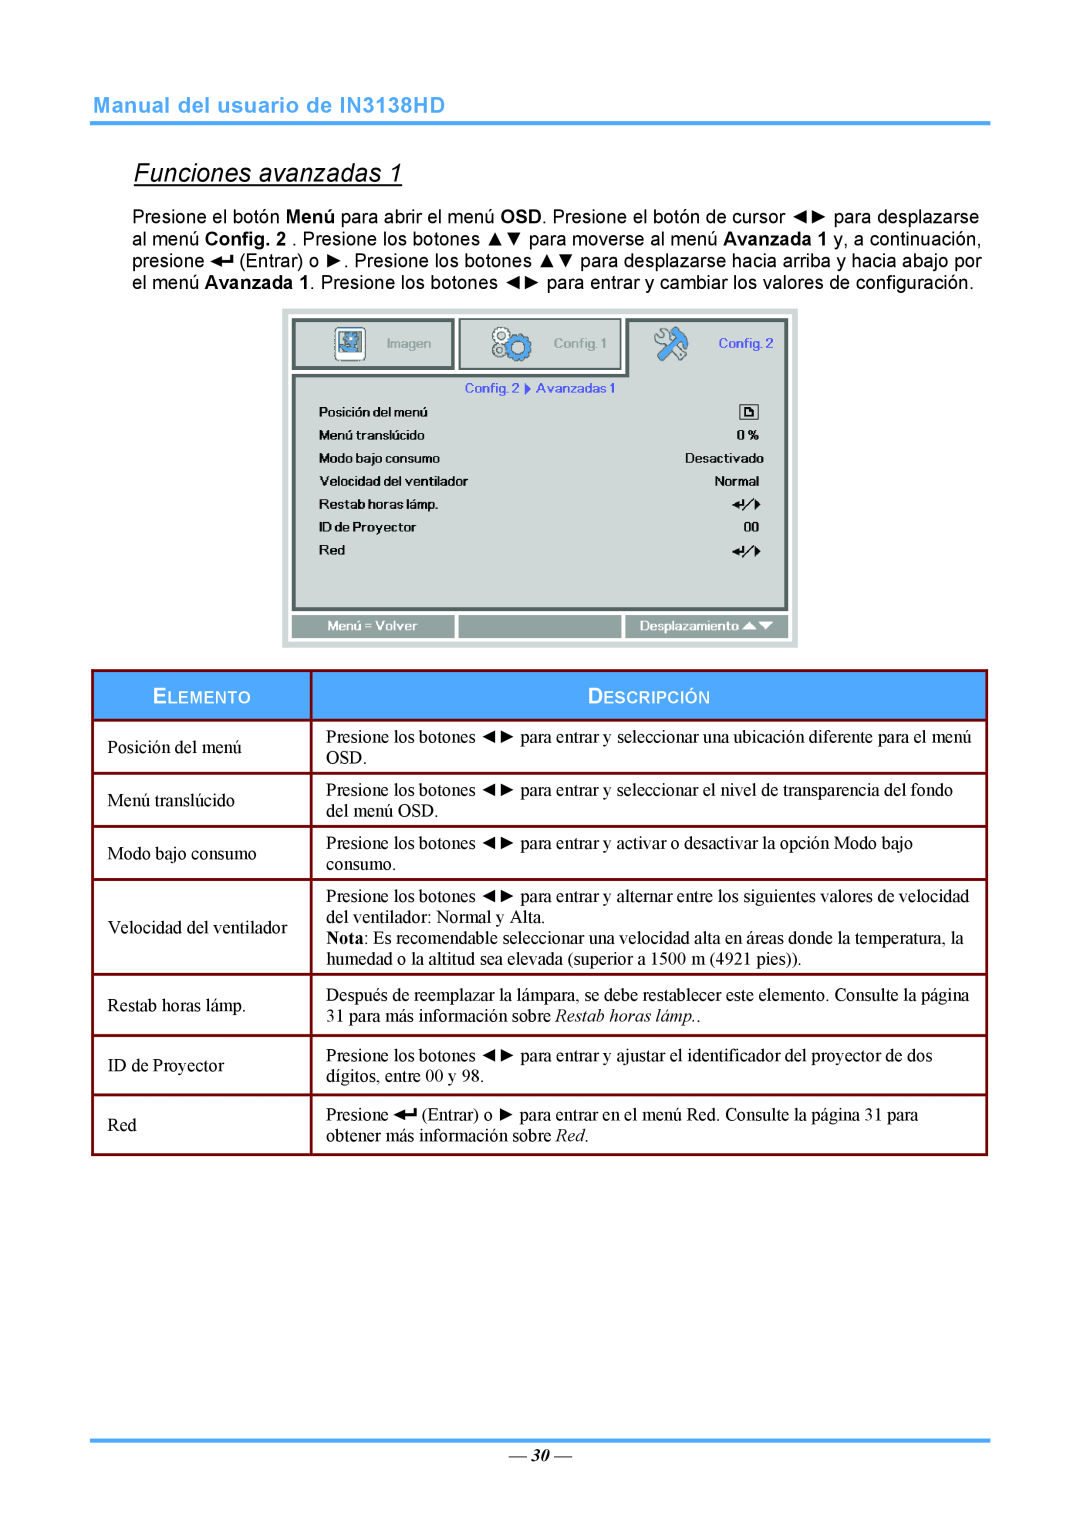 InFocus 3534324301 manual Funciones avanzadas, Manual del usuario de IN3138HD, Posición del menú 